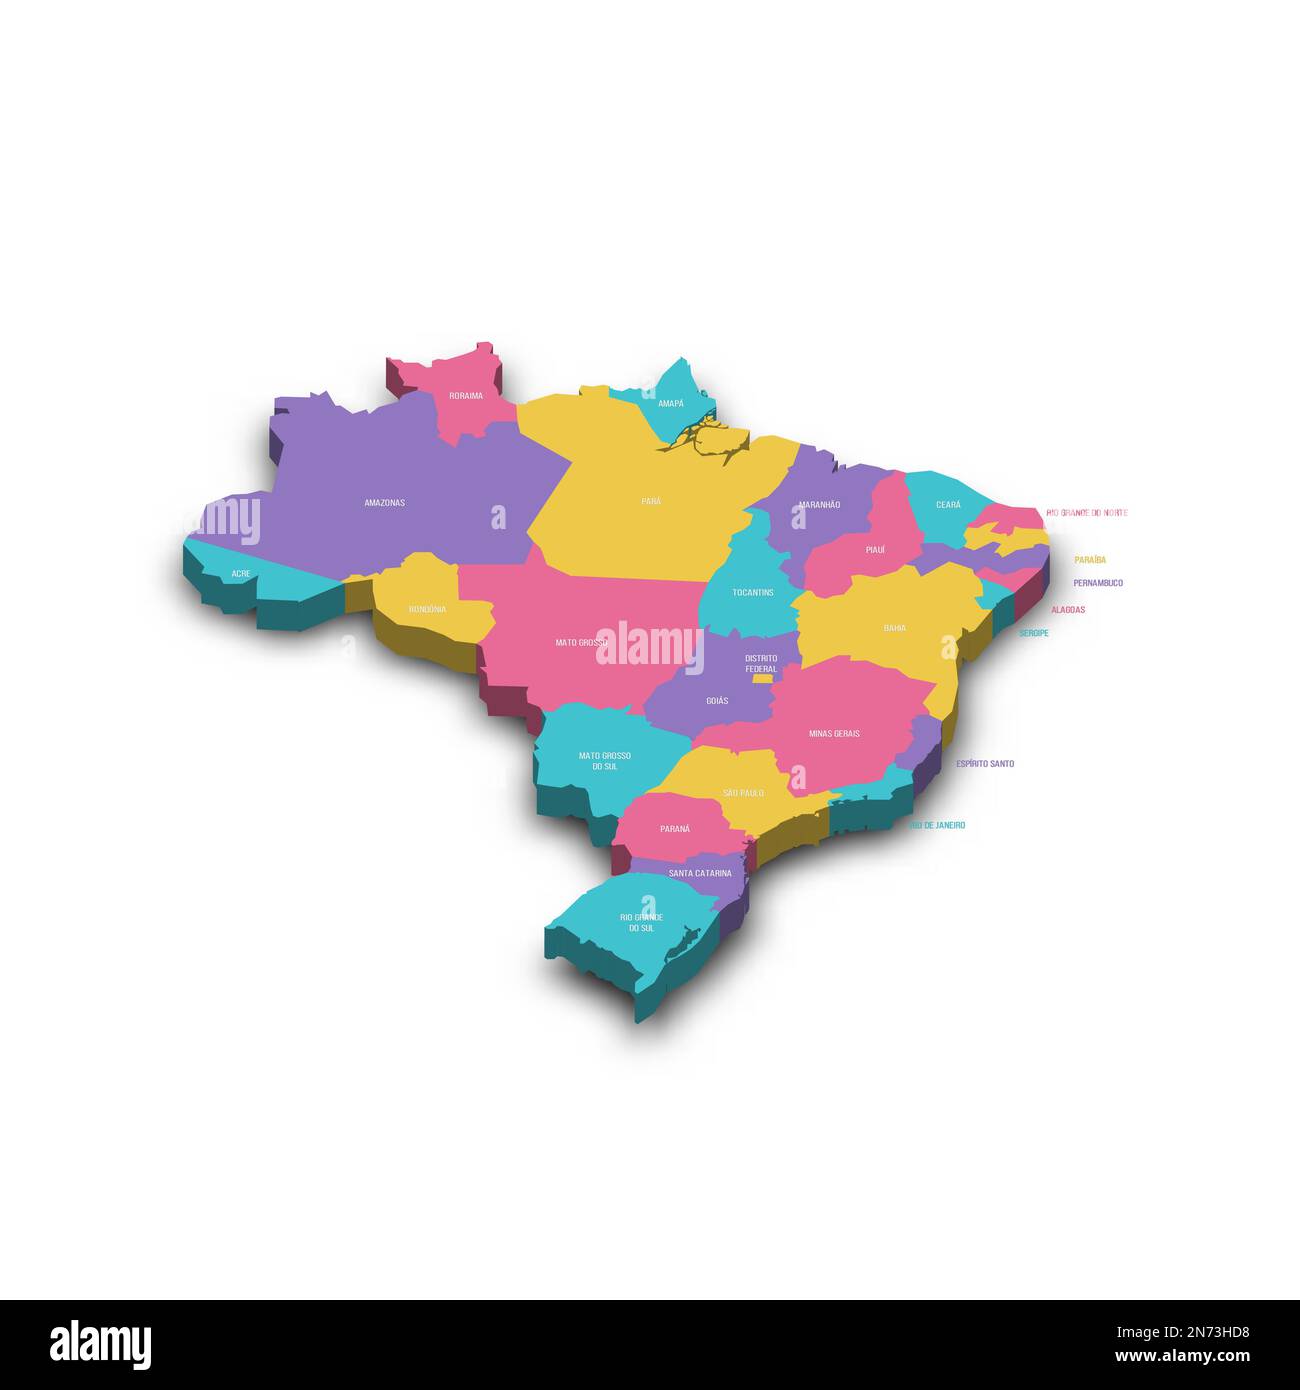 Politische Karte Brasiliens der Verwaltungsabteilungen - Föderative Einheiten Brasiliens. Farbenfrohe 3D-Vektorkarte mit versenkten Schatten und Ländernamen. Stock Vektor